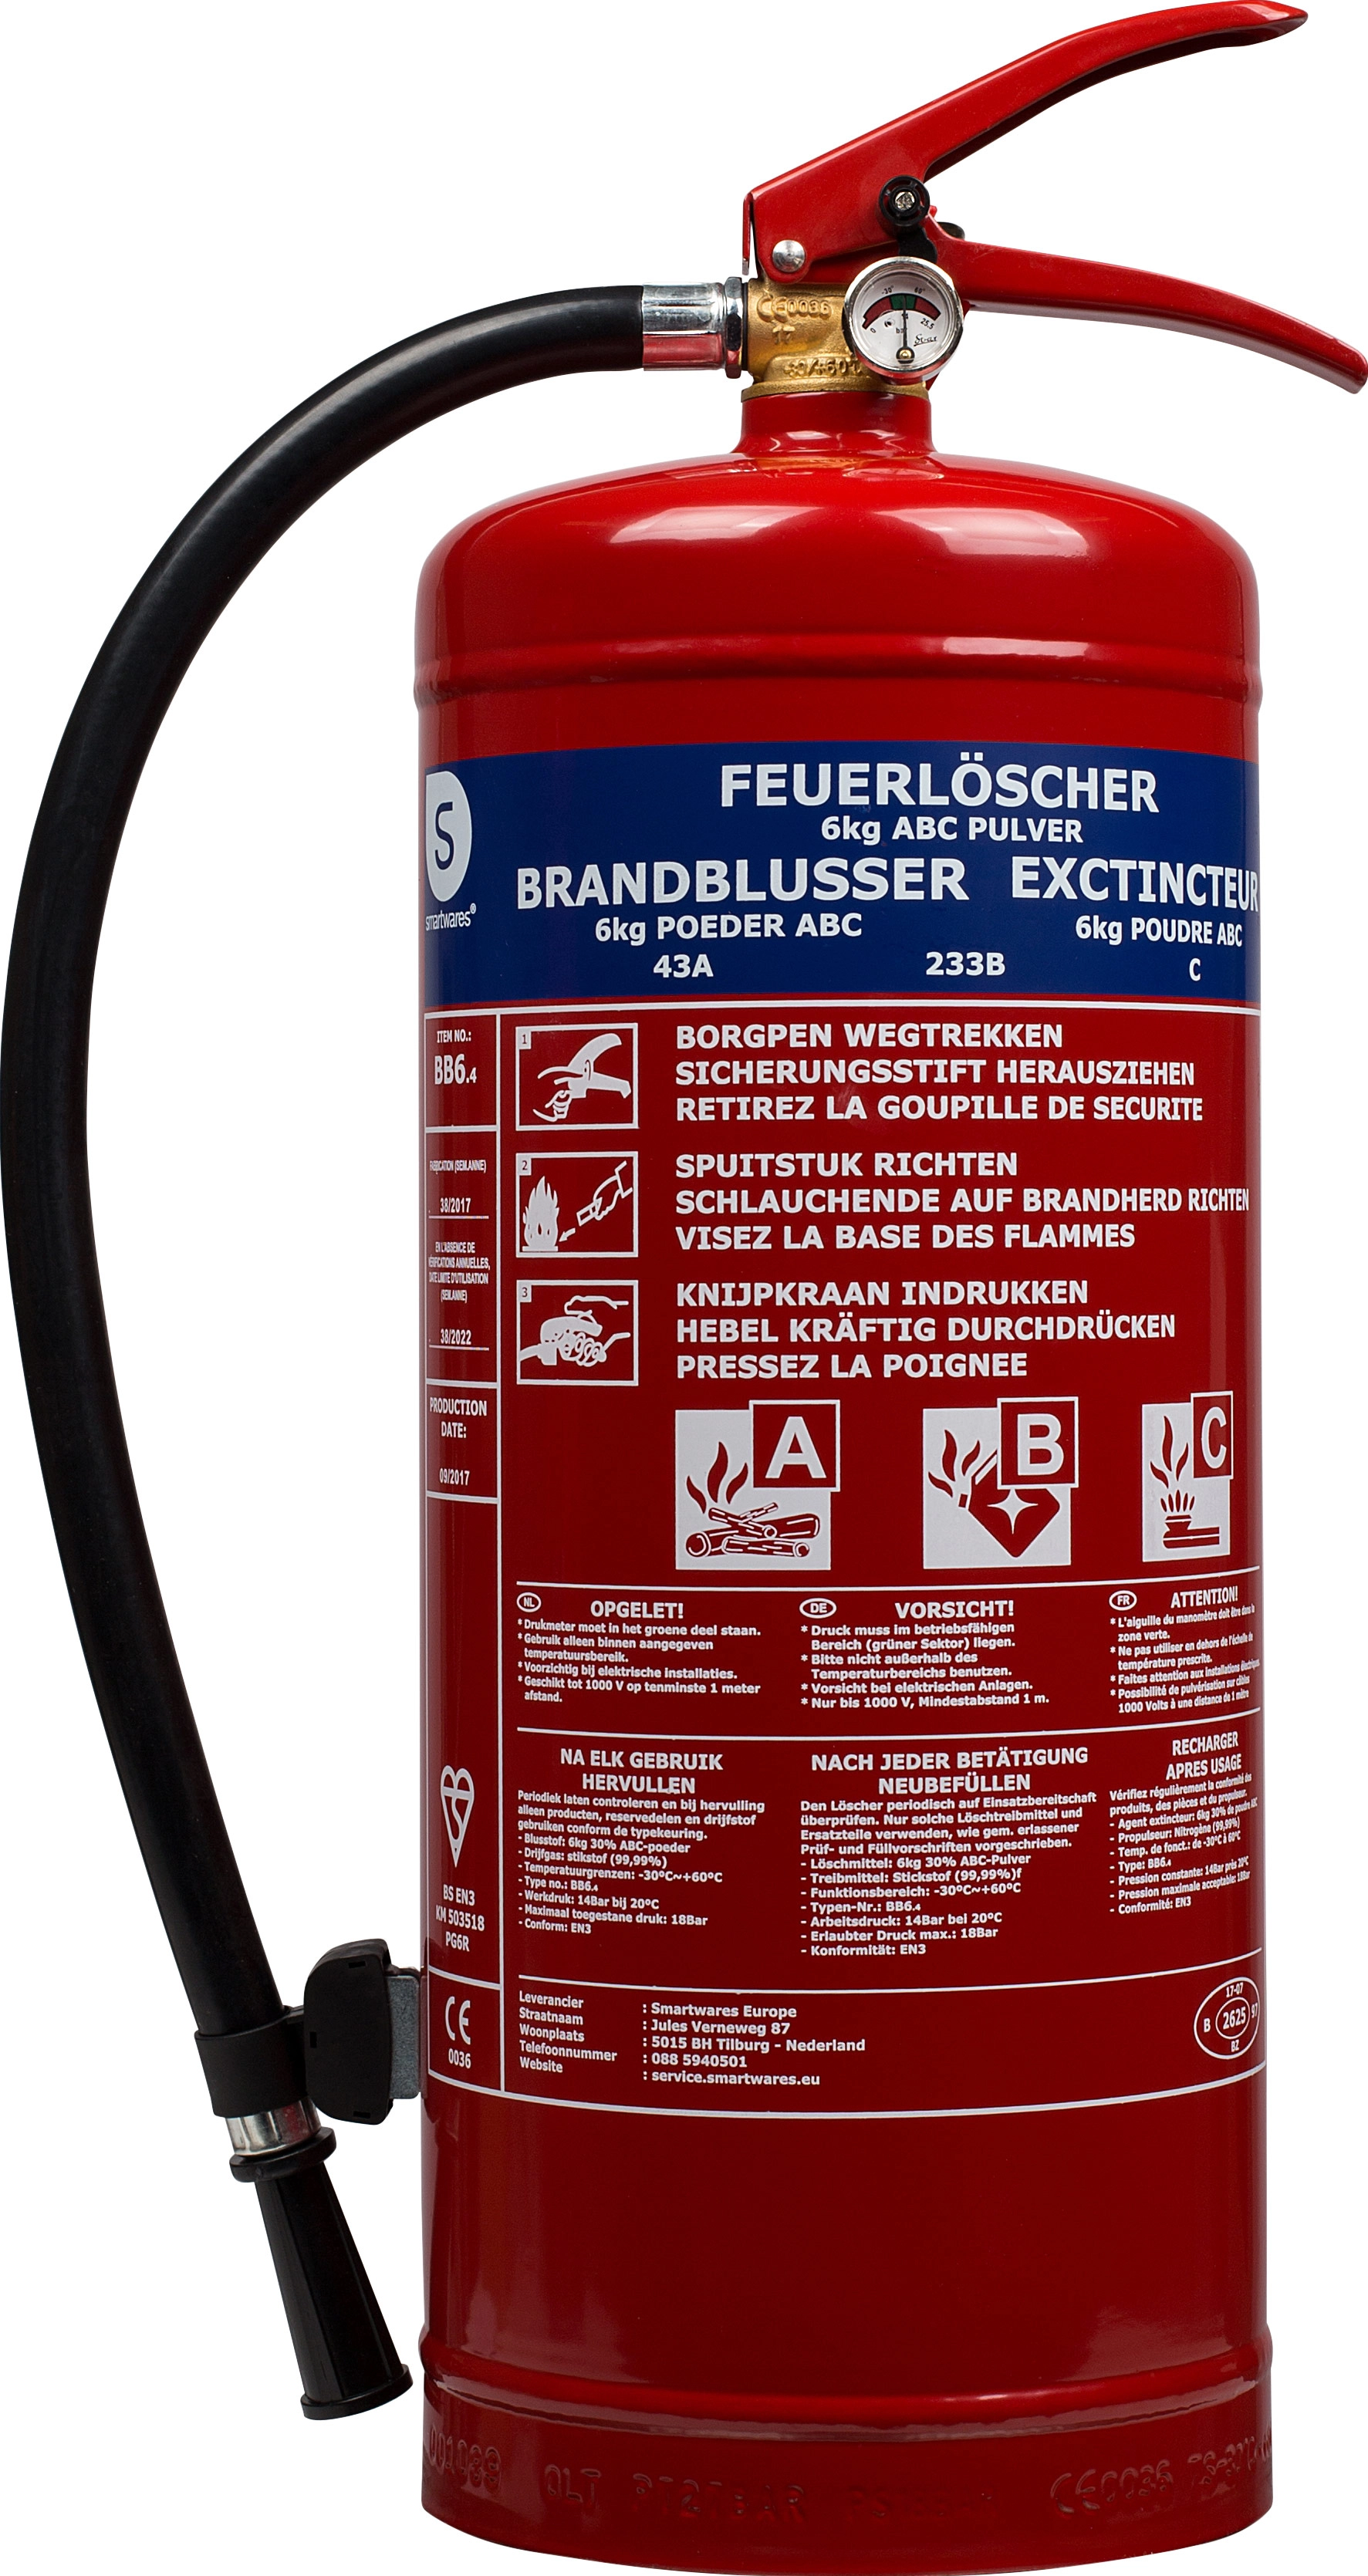 Feuerlöscher 6kg ABC Pulver – Eventlieferant